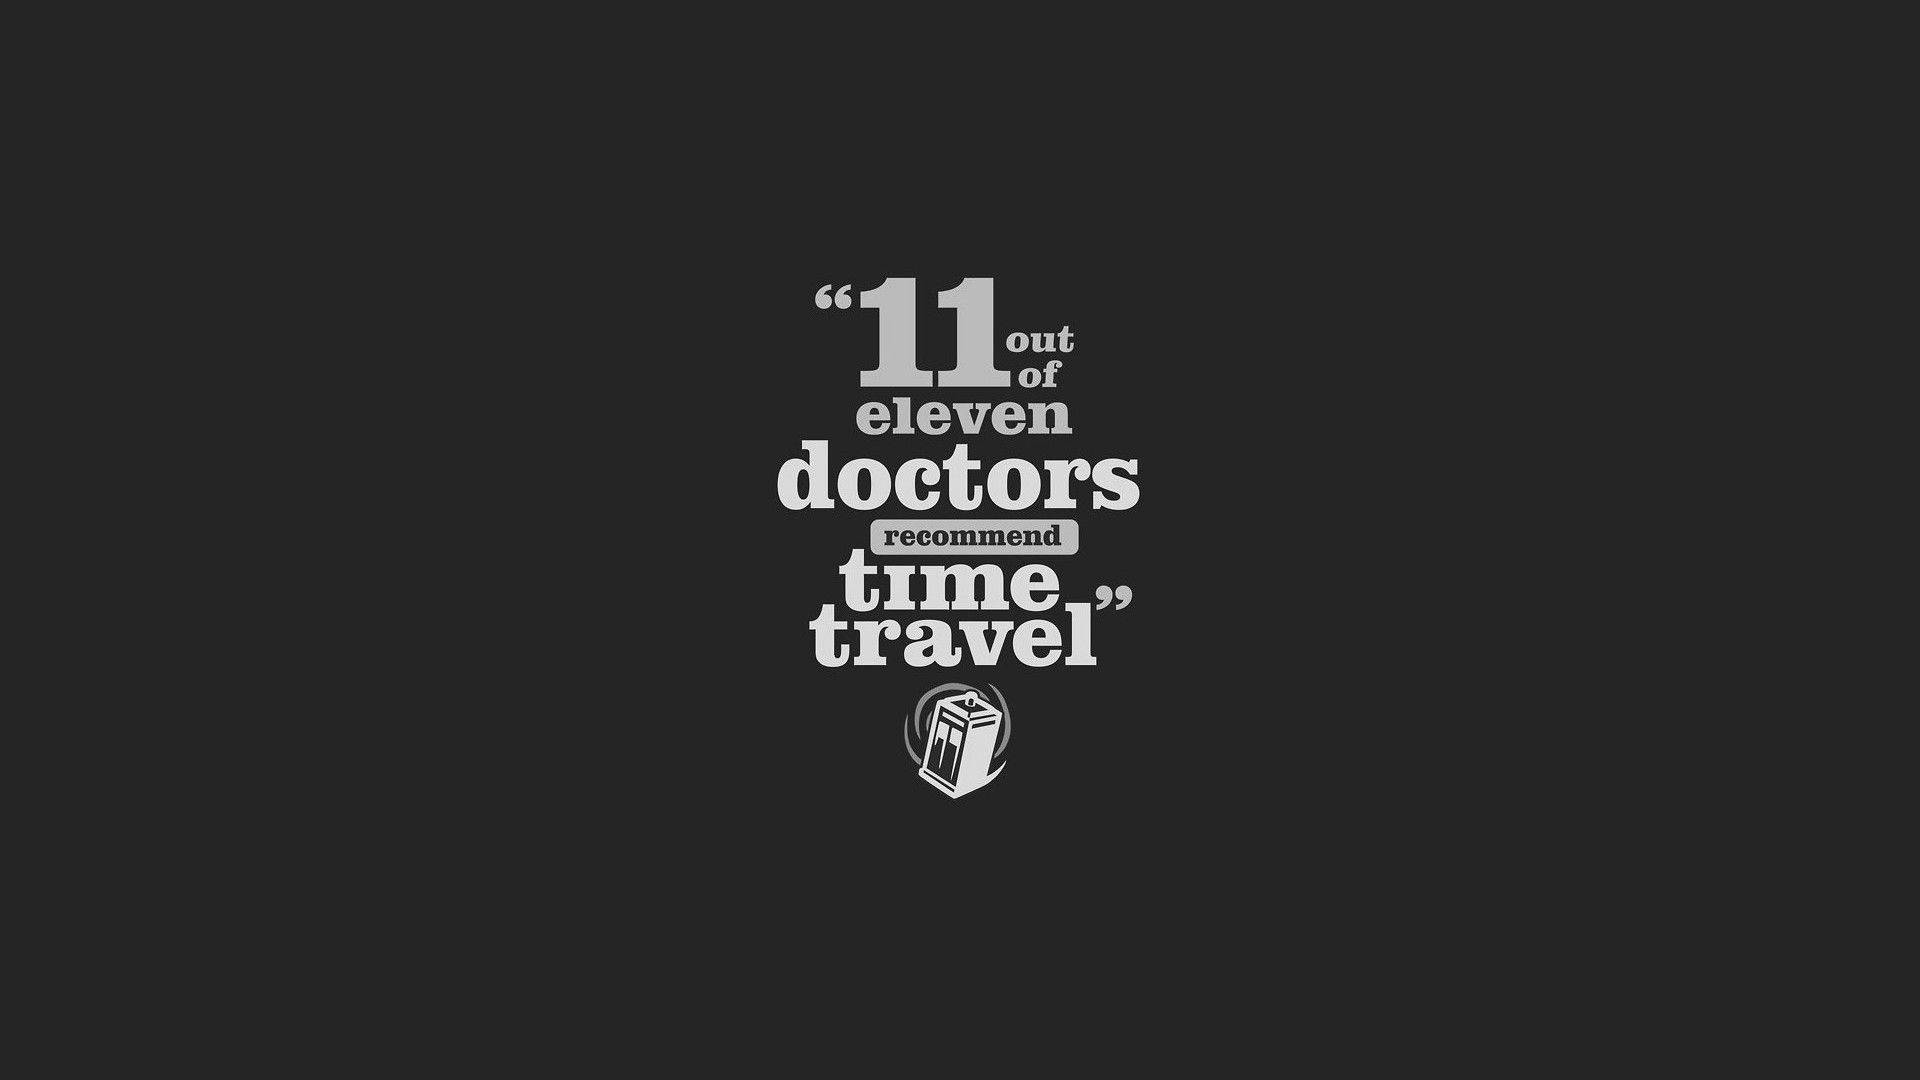 Doctor Motivation - time travel